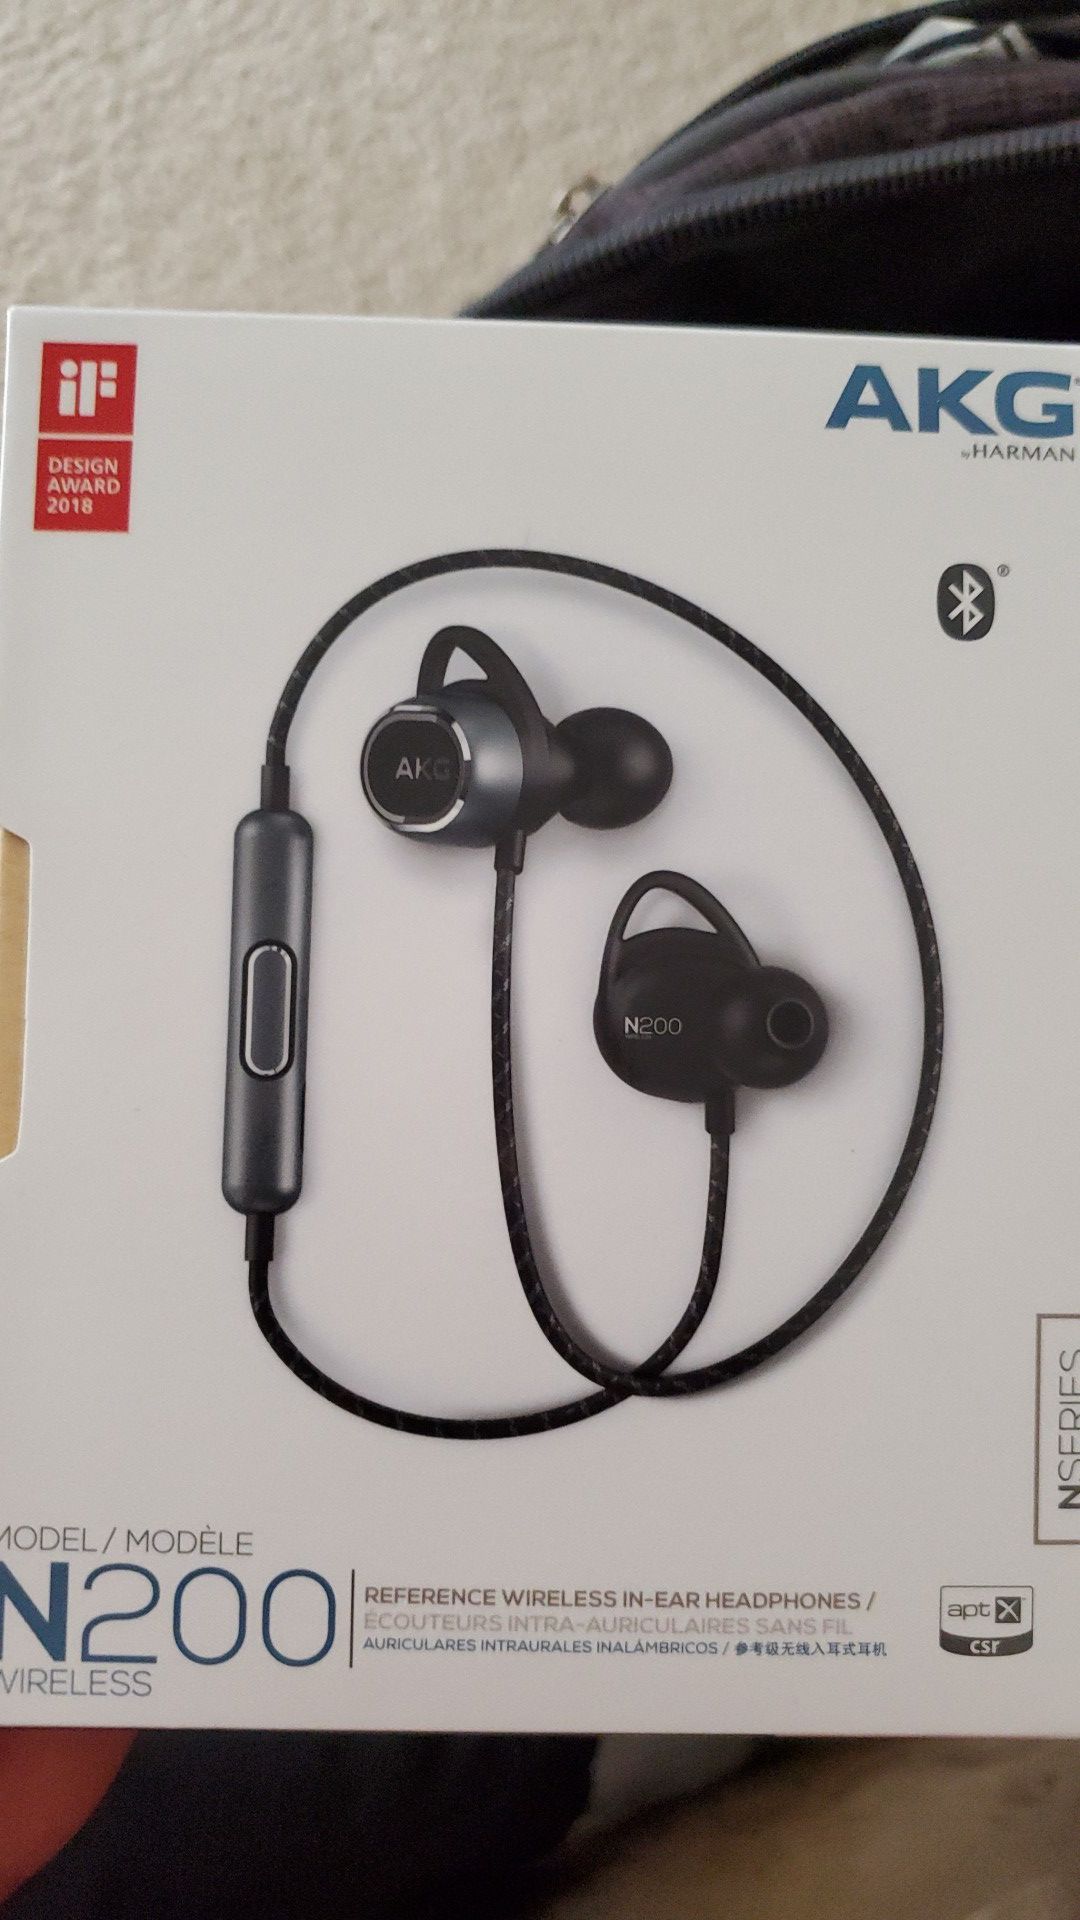 Akg N200 wireless earbuds